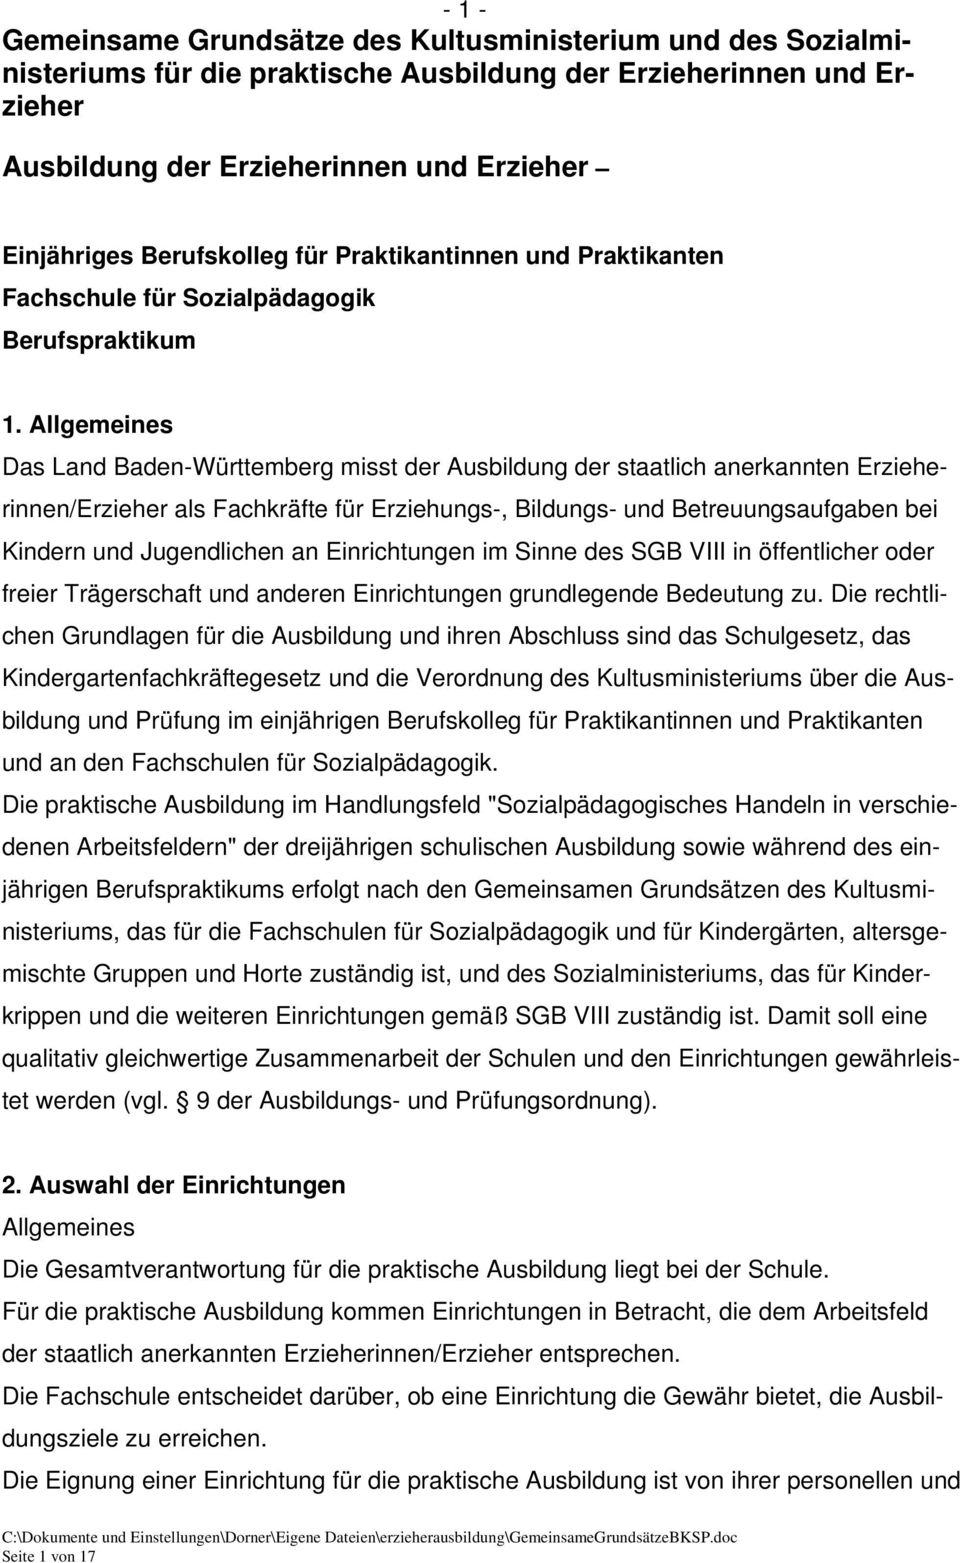 Allgemeines Das Land Baden-Württemberg misst der Ausbildung der staatlich anerkannten Erzieherinnen/Erzieher als Fachkräfte für Erziehungs-, Bildungs- und Betreuungsaufgaben bei Kindern und